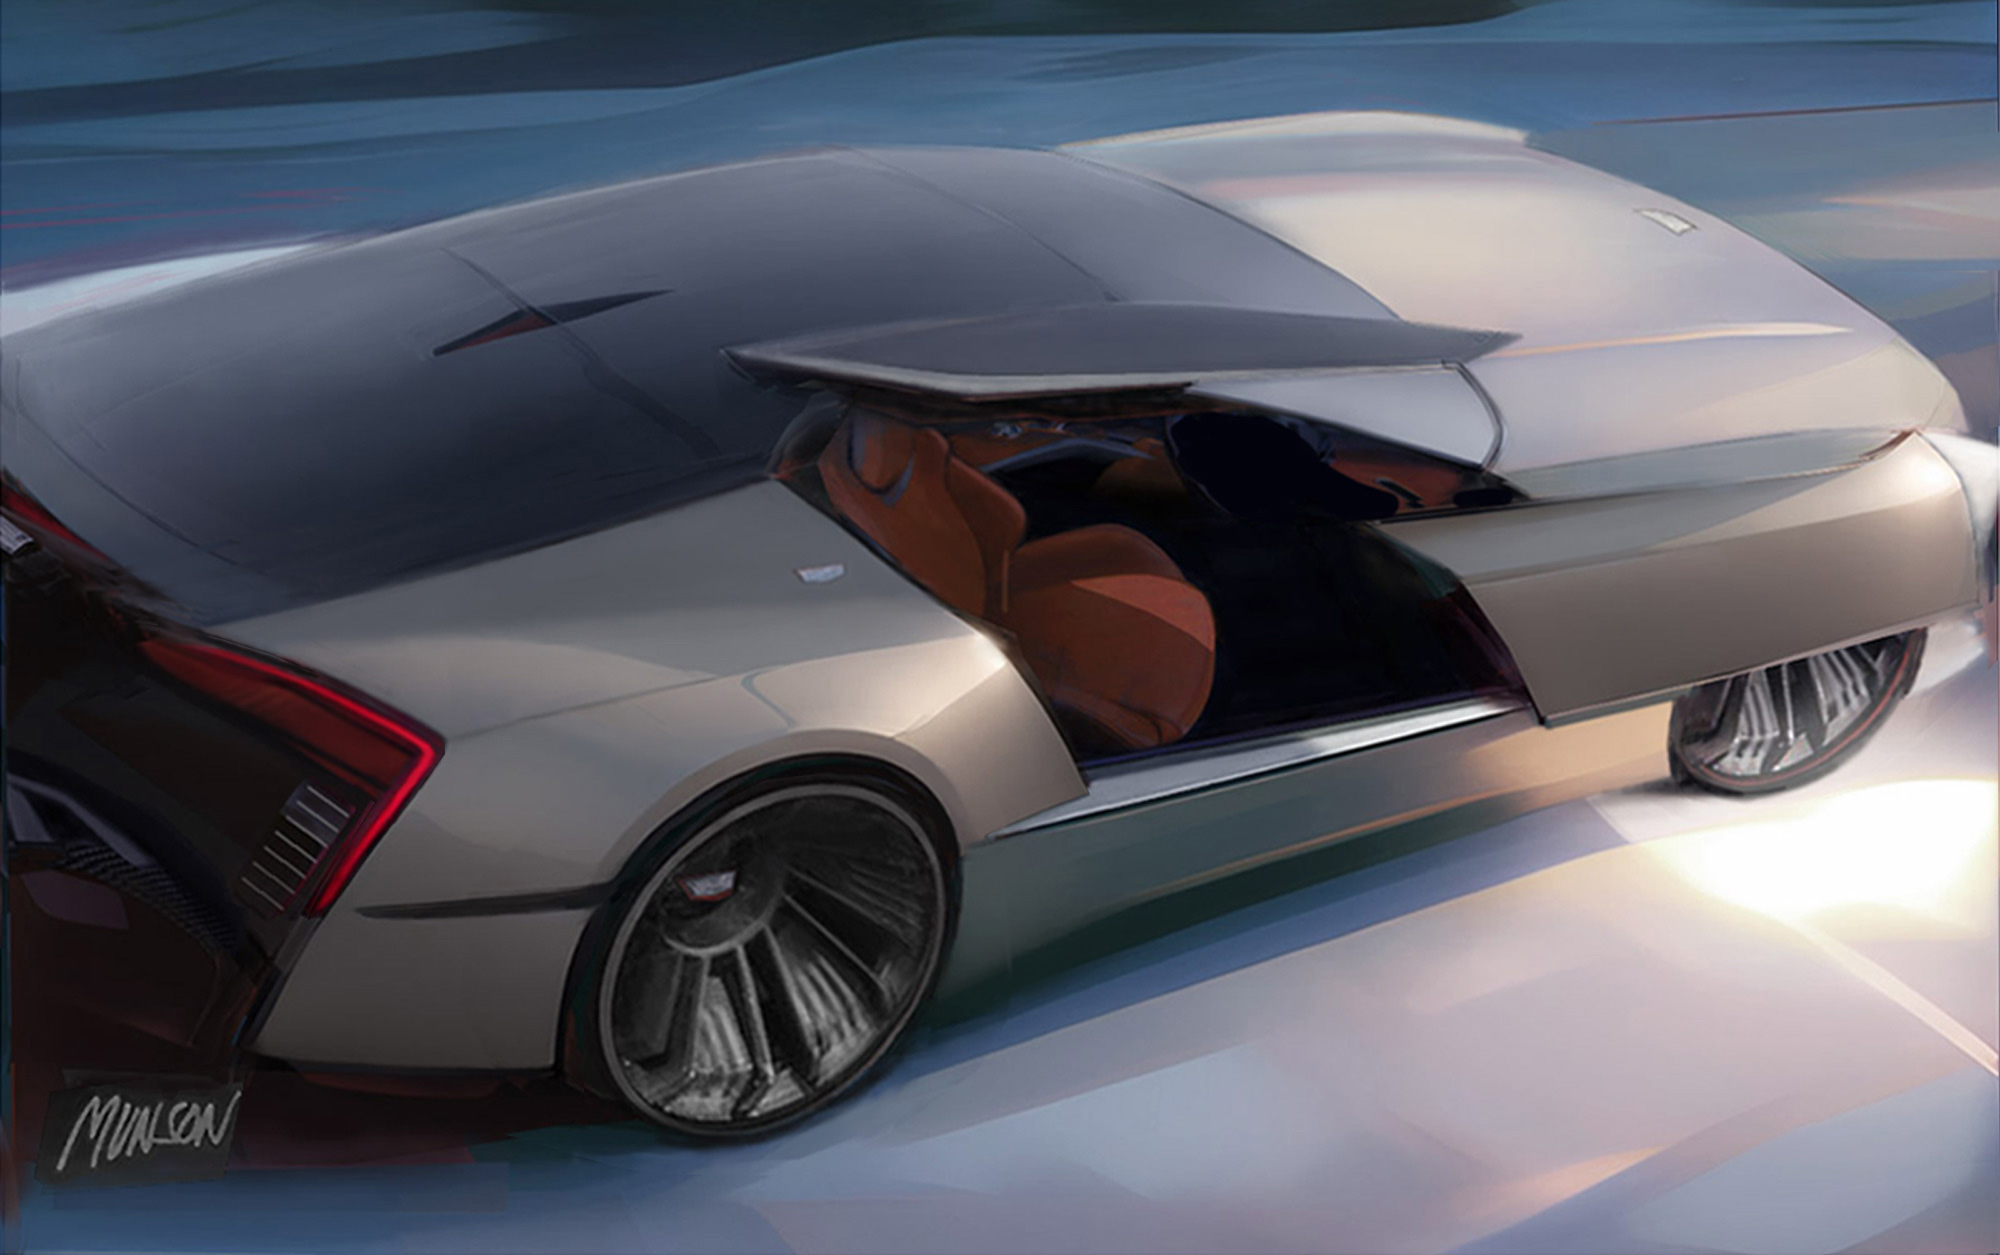 Cadillac coupe exterior concept using vizcom.ai